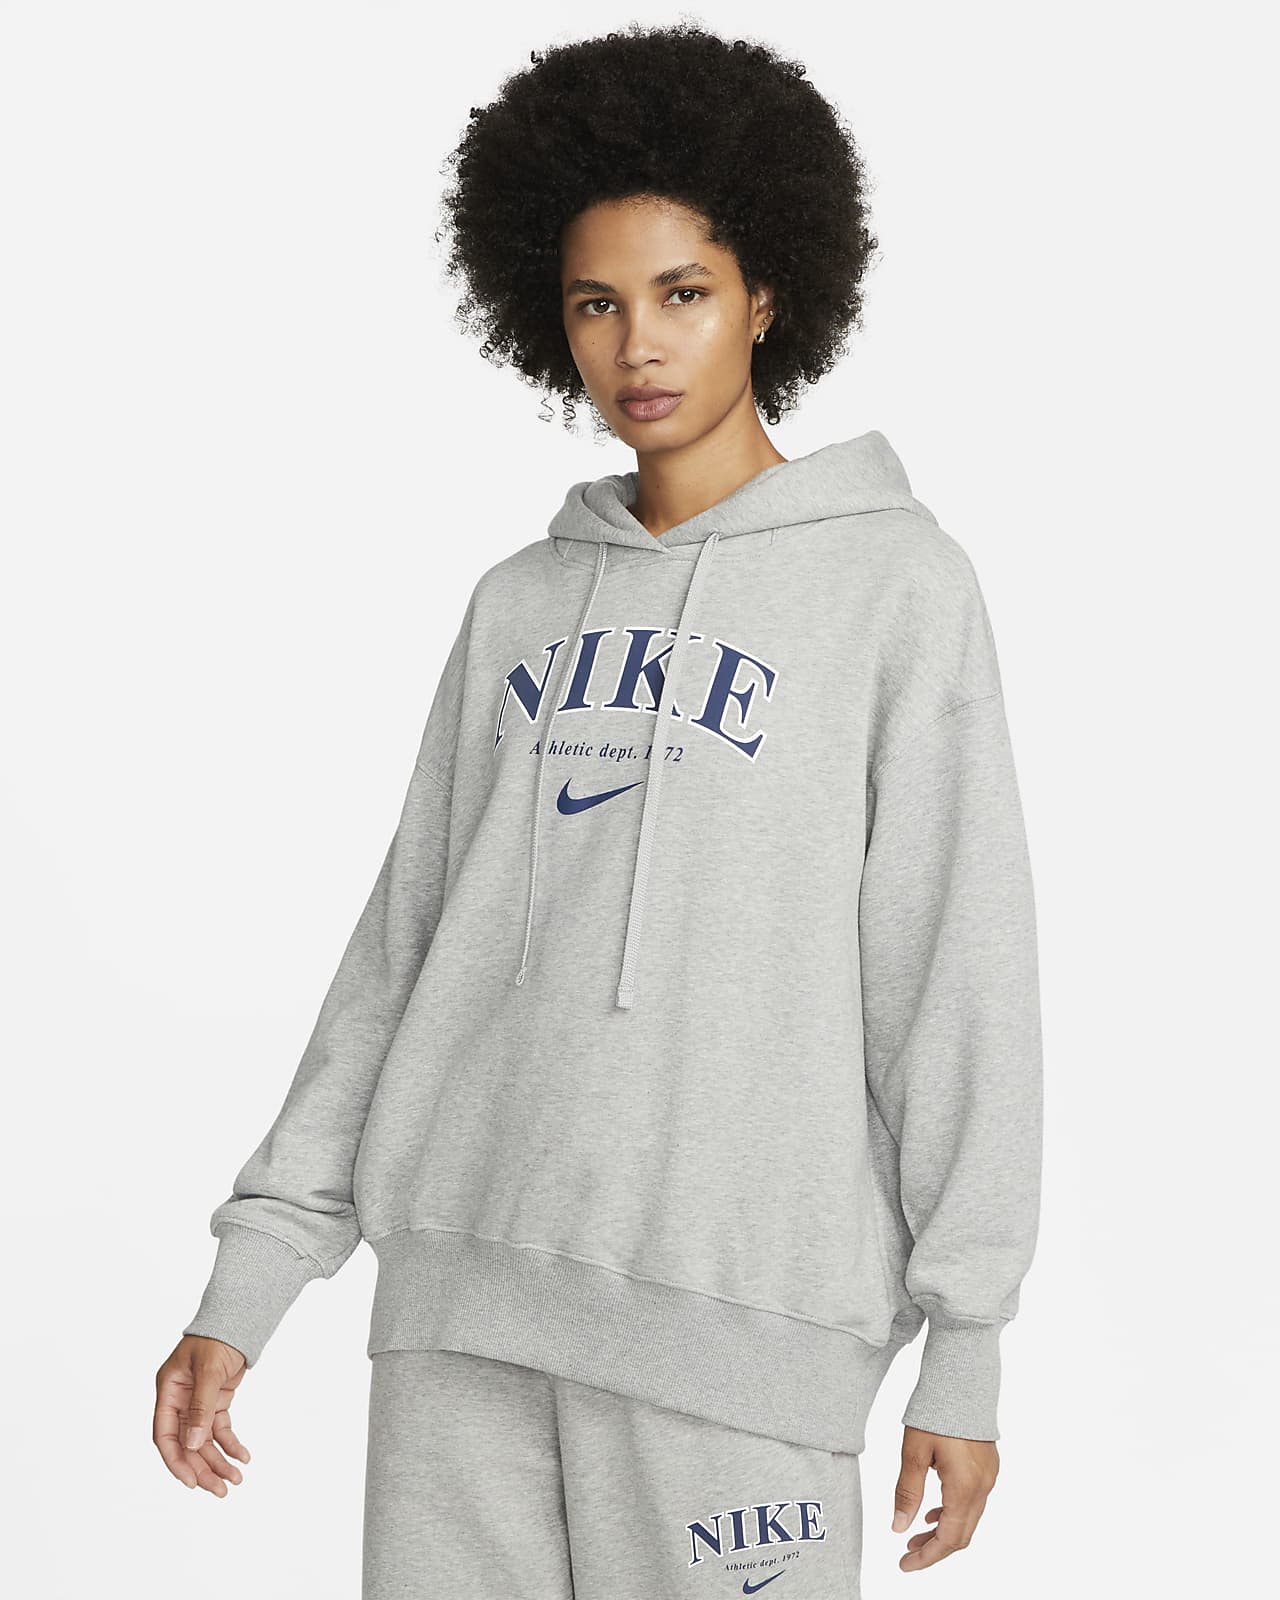 Nike Sportswear nike pegasus 32 womens Women's Oversized Fleece Pullover Hoodie. Nike FI